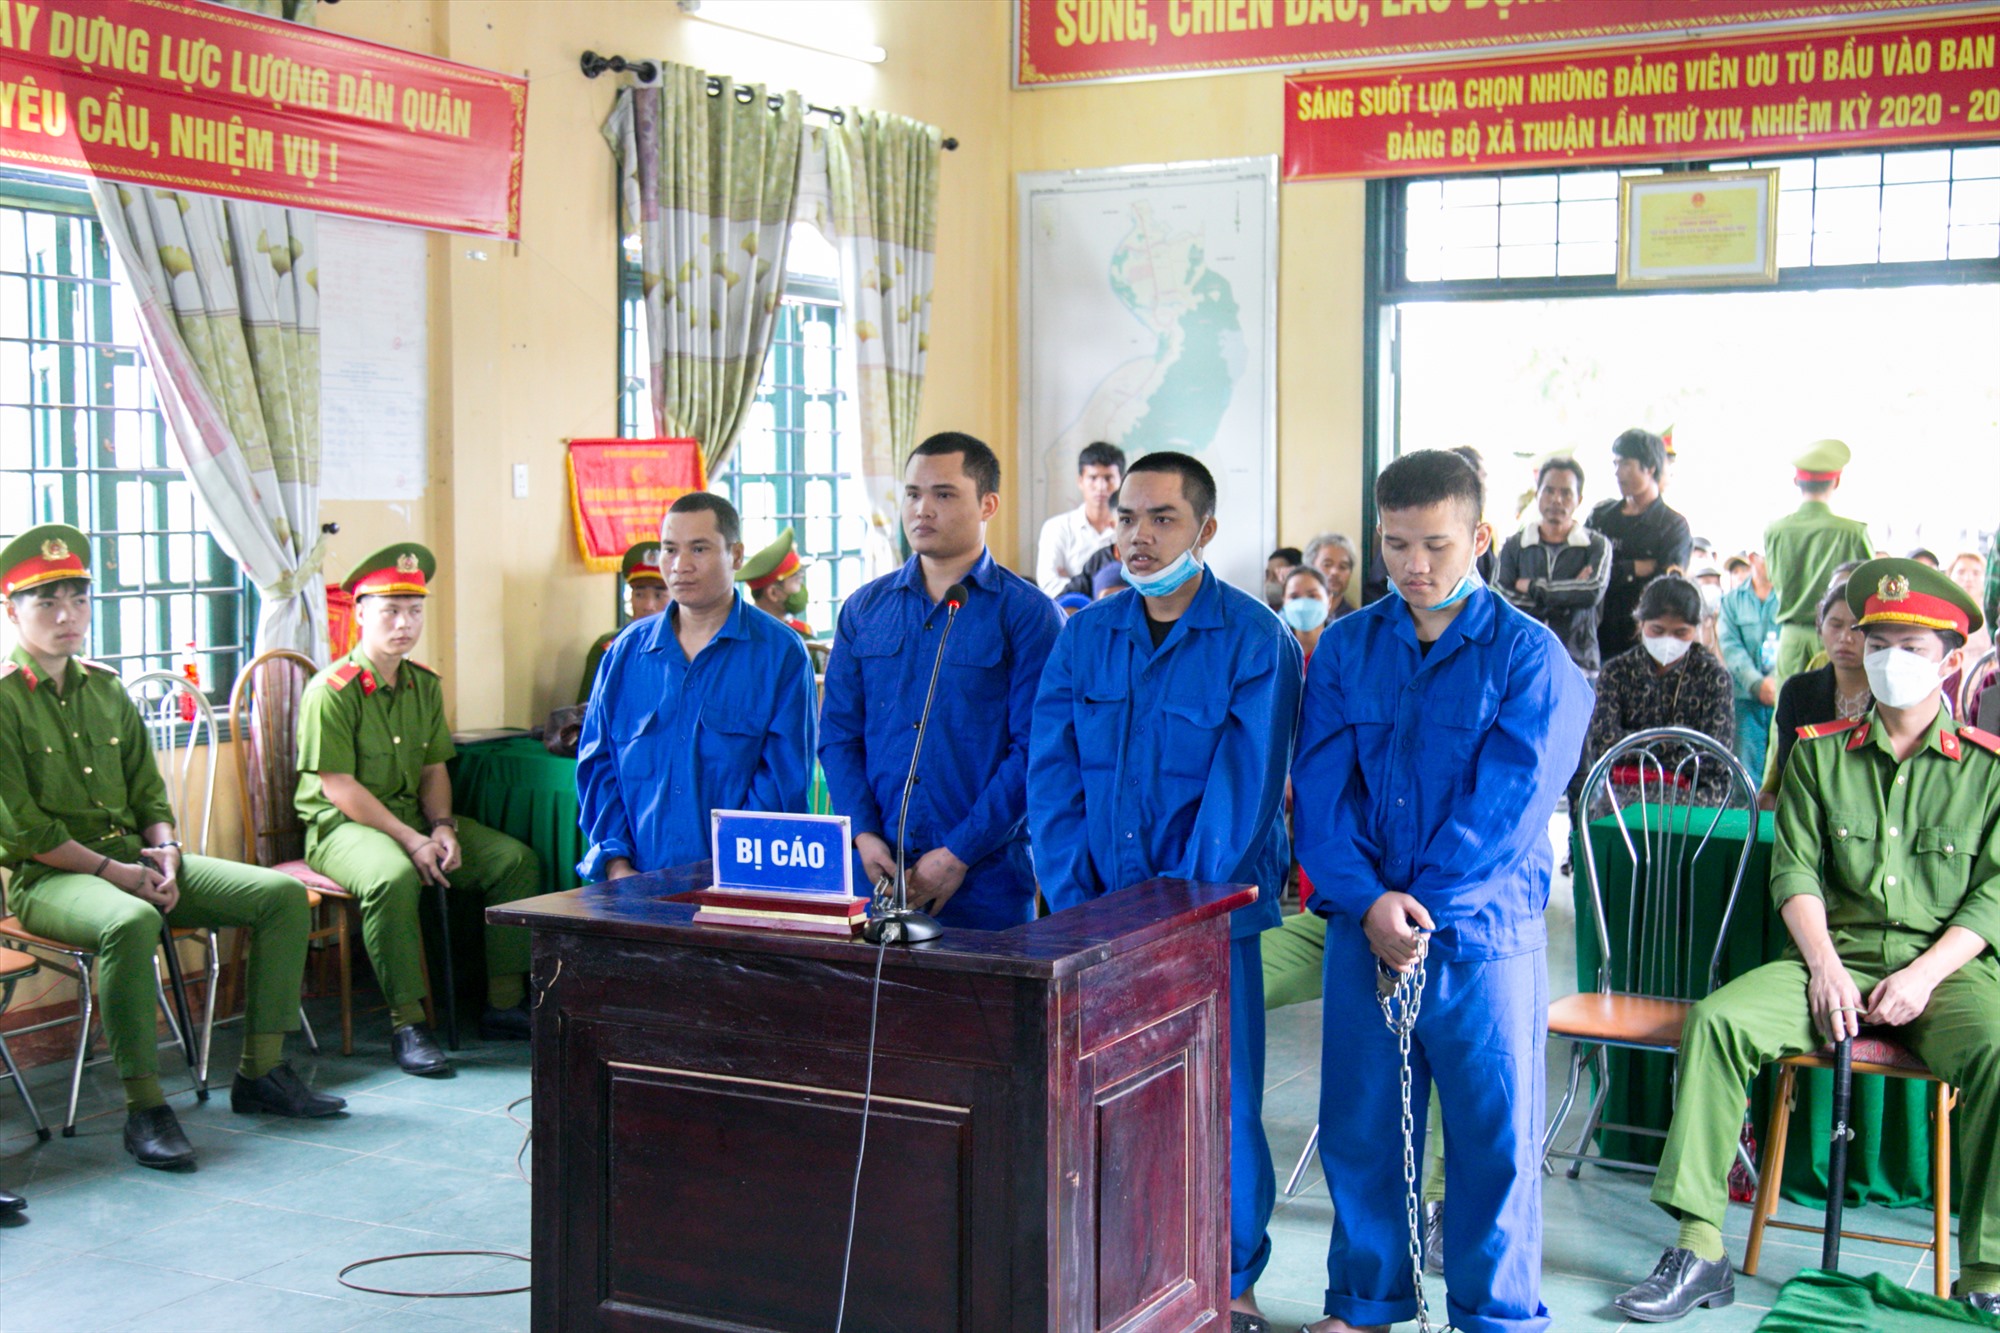 Bị cáo Hồ A Ran, Hồ A Khay, Hồ A Liêm, Hồ Văn Long (từ trái sang) tại phiên tòa - Ảnh: Lê Trường